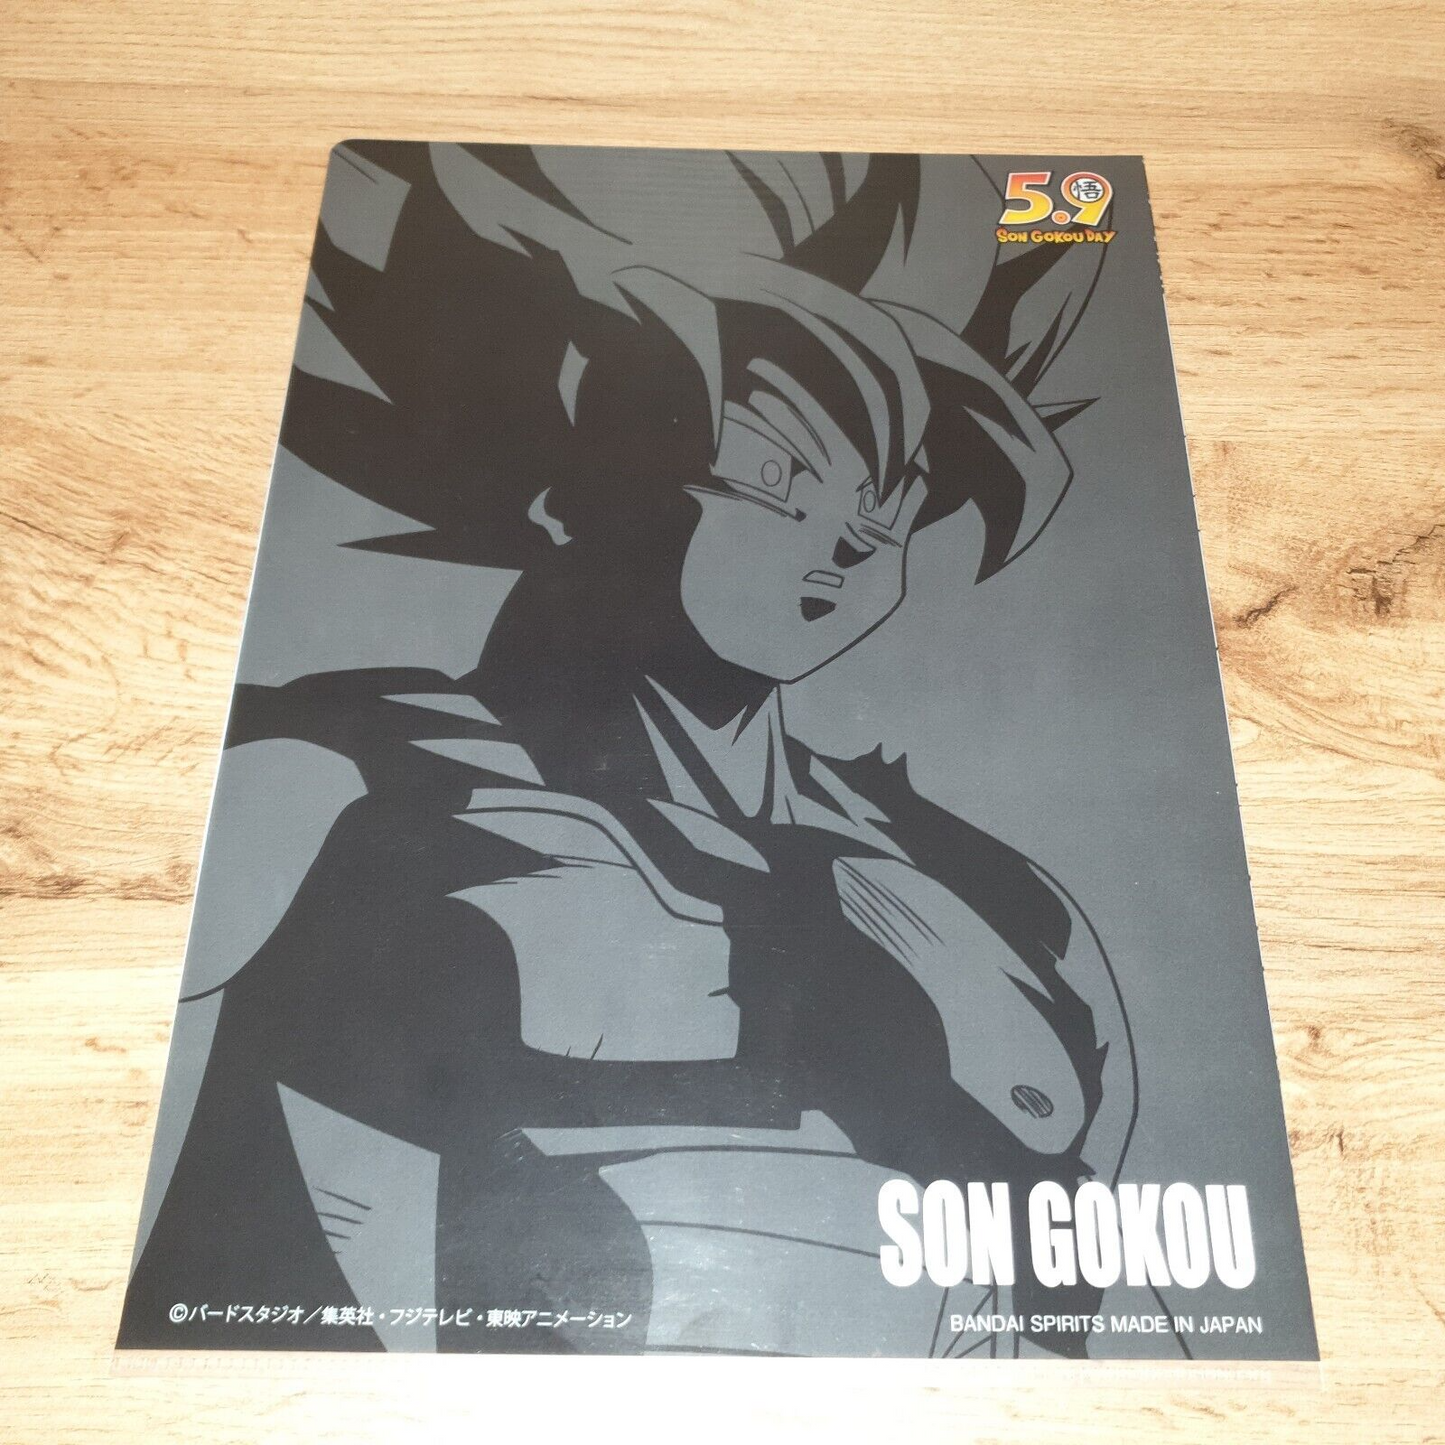 Dragon Ball Z Goku Super Saiyan A4 Clear File